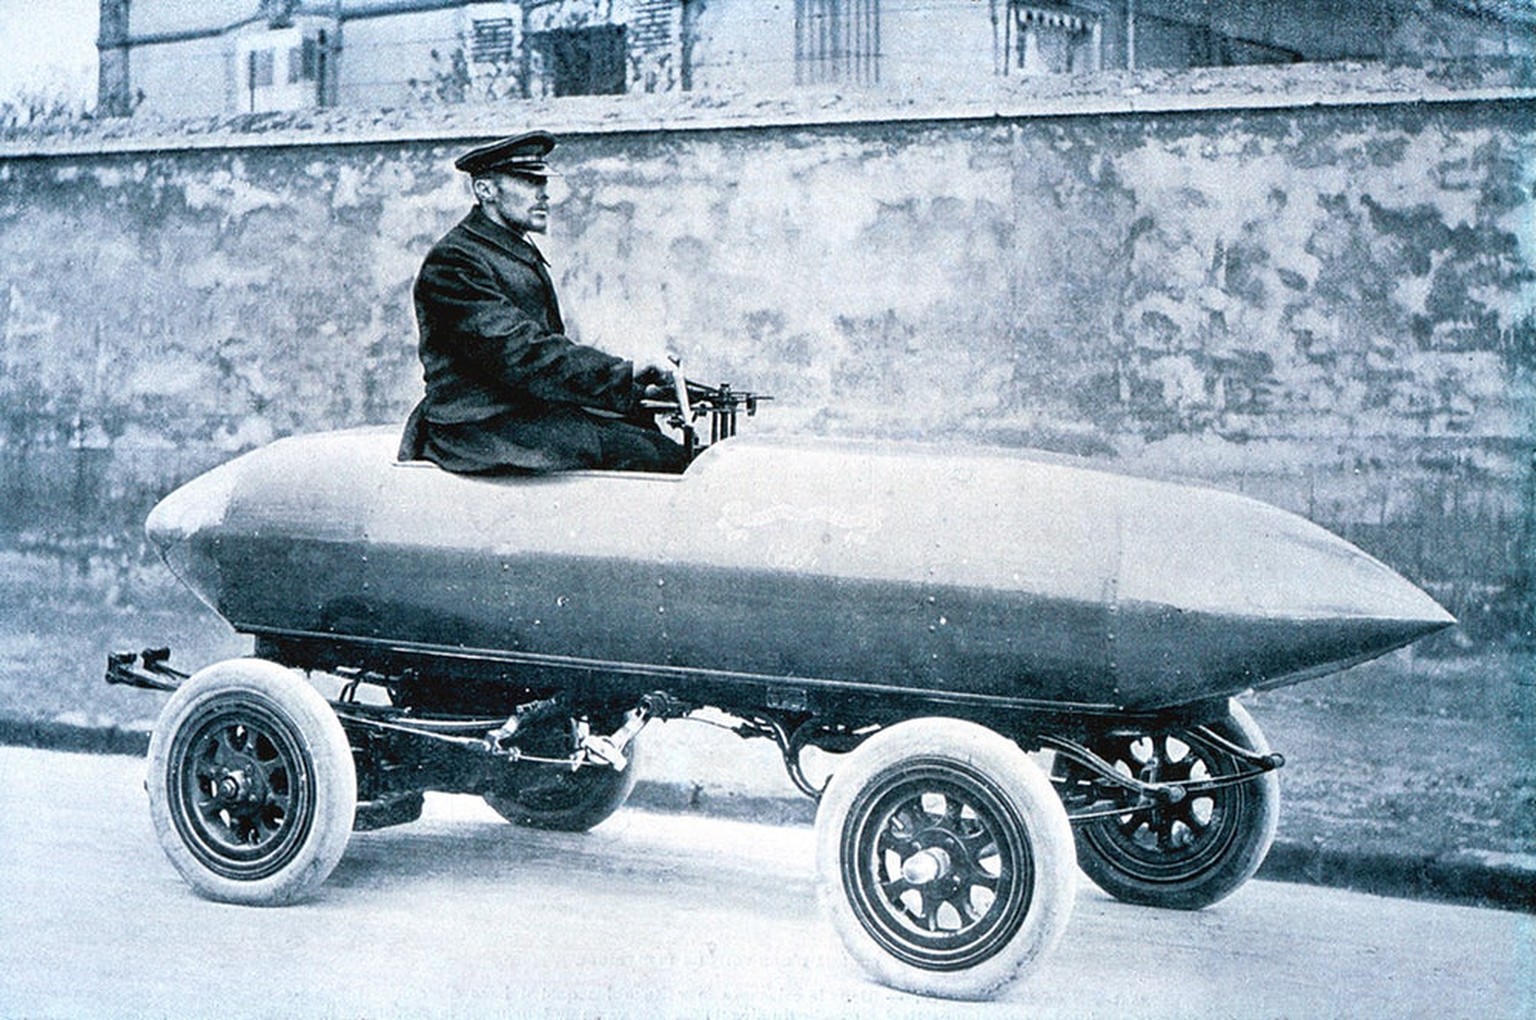 la jamais contente elektrofahrzeug rekordfahrzeug 1899 auto motor https://de.wikipedia.org/wiki/La_Jamais_Contente